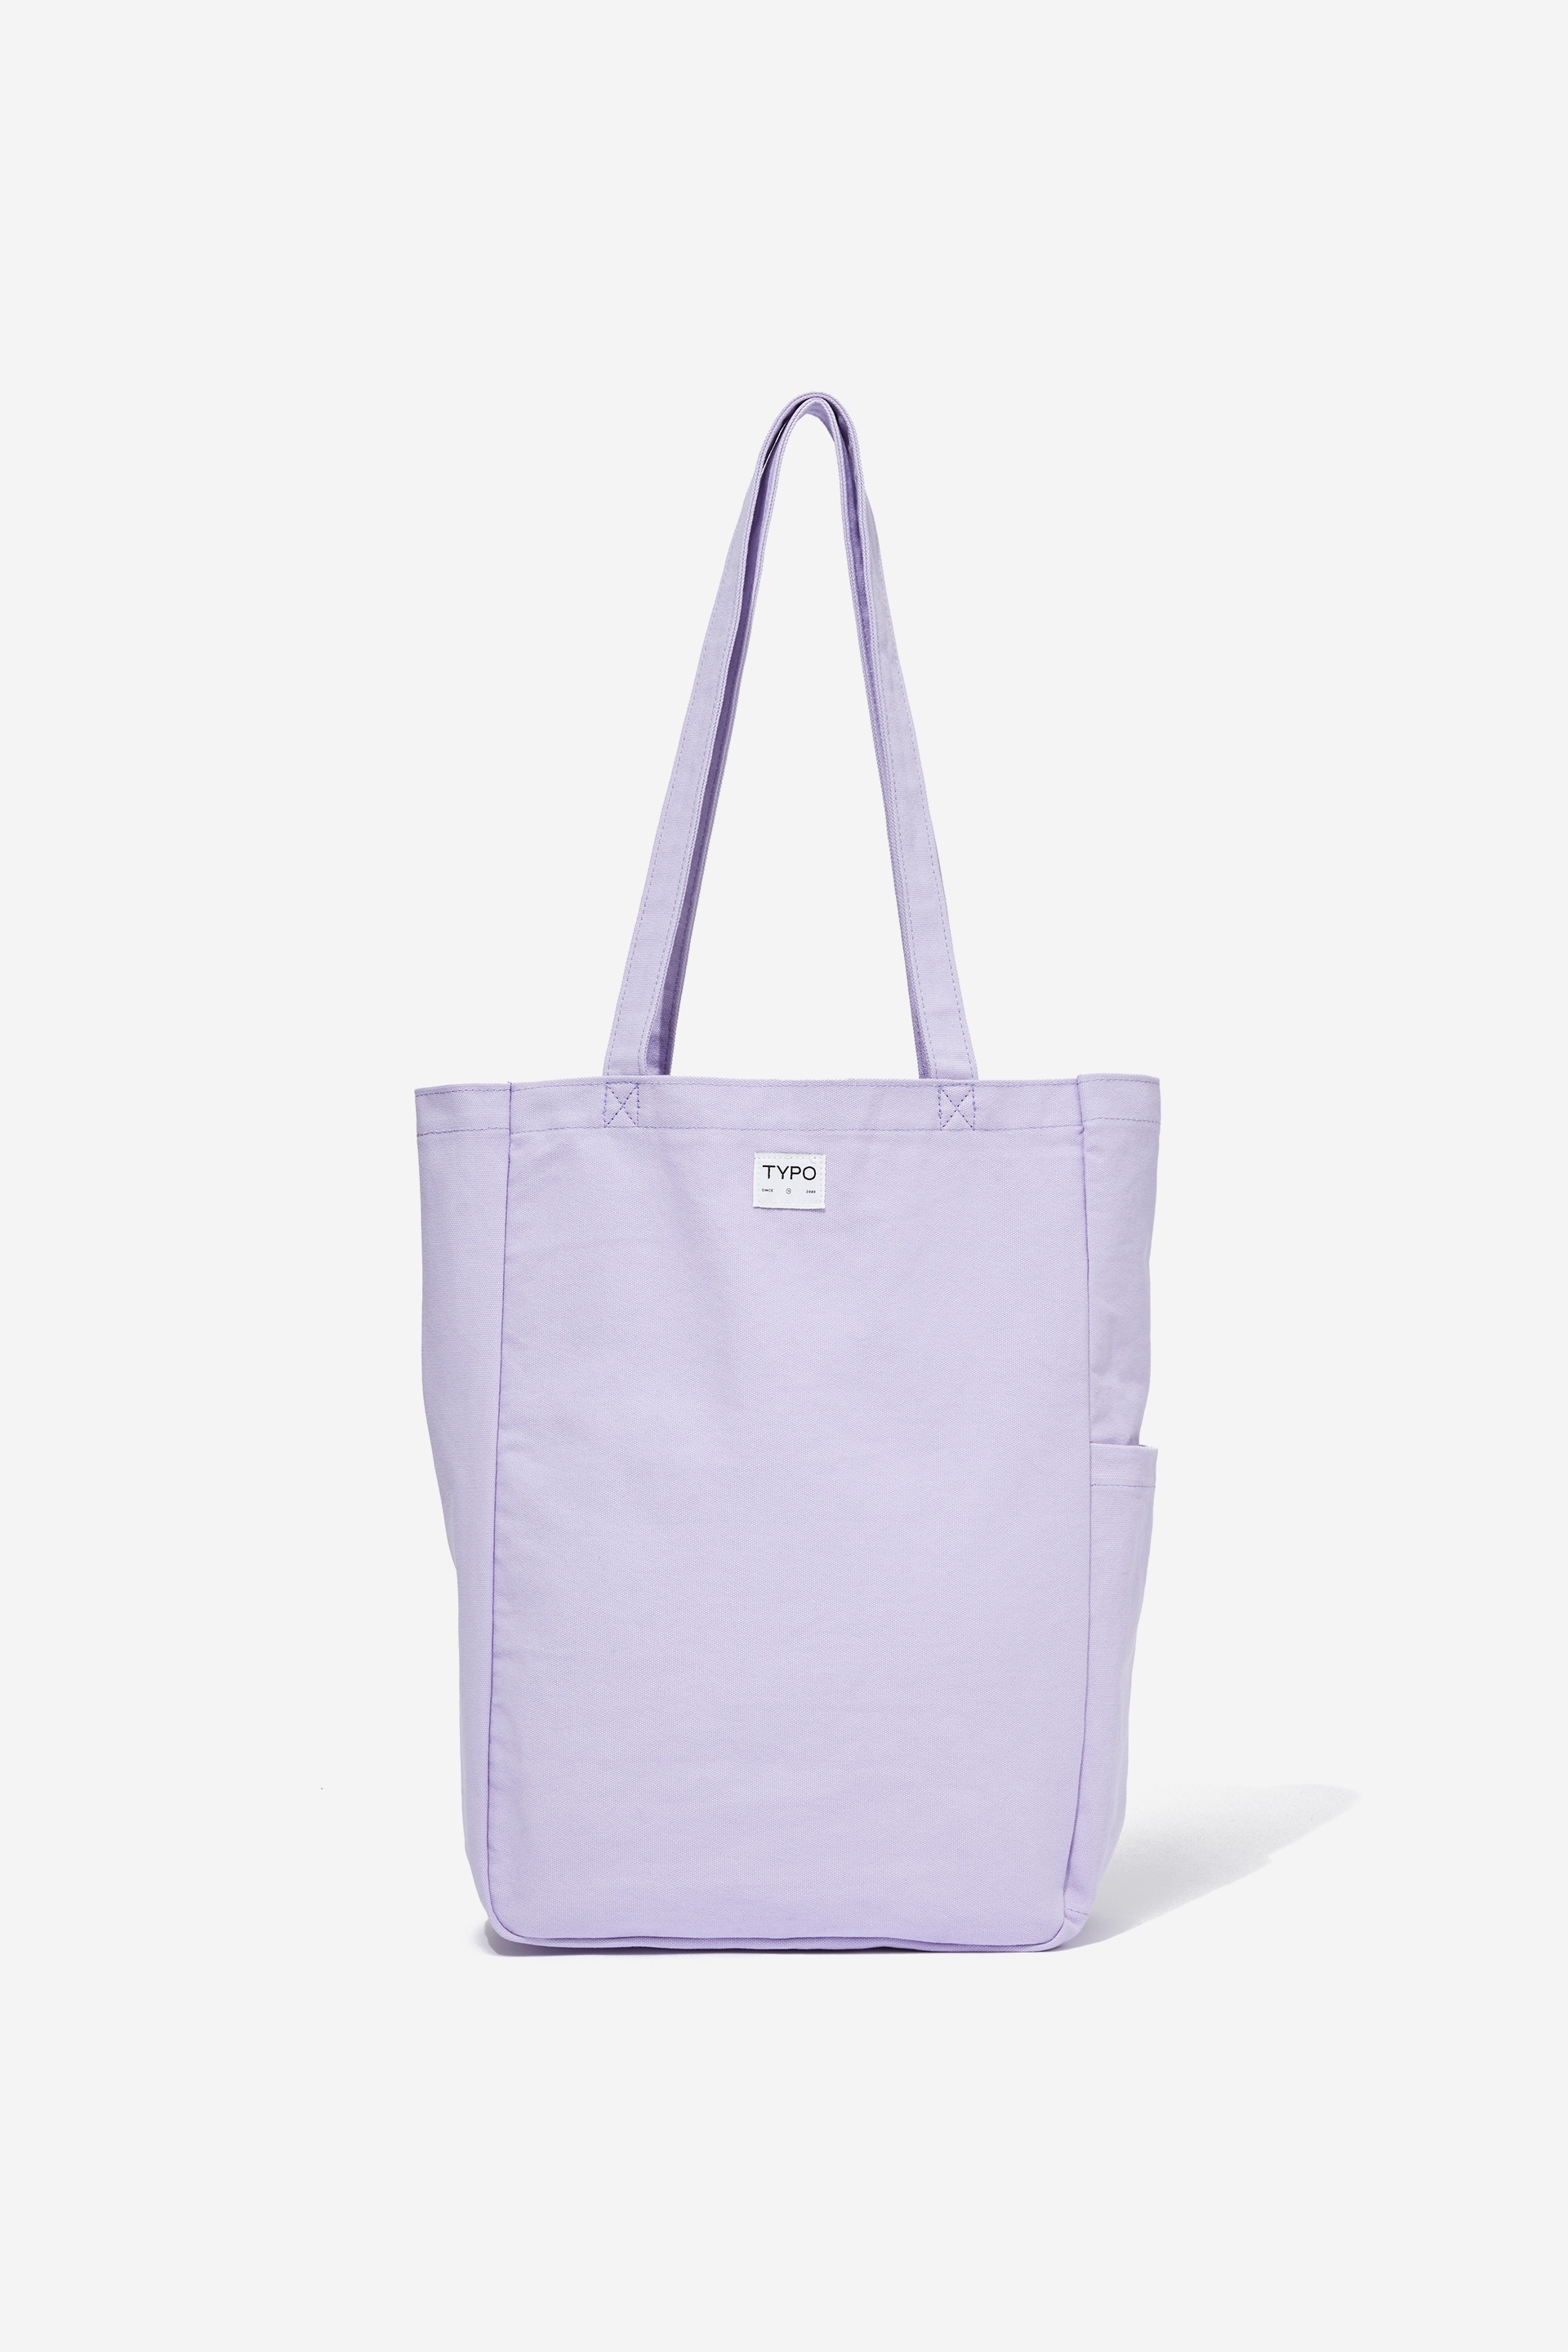 Typo - Art Tote Bag - Soft lilac